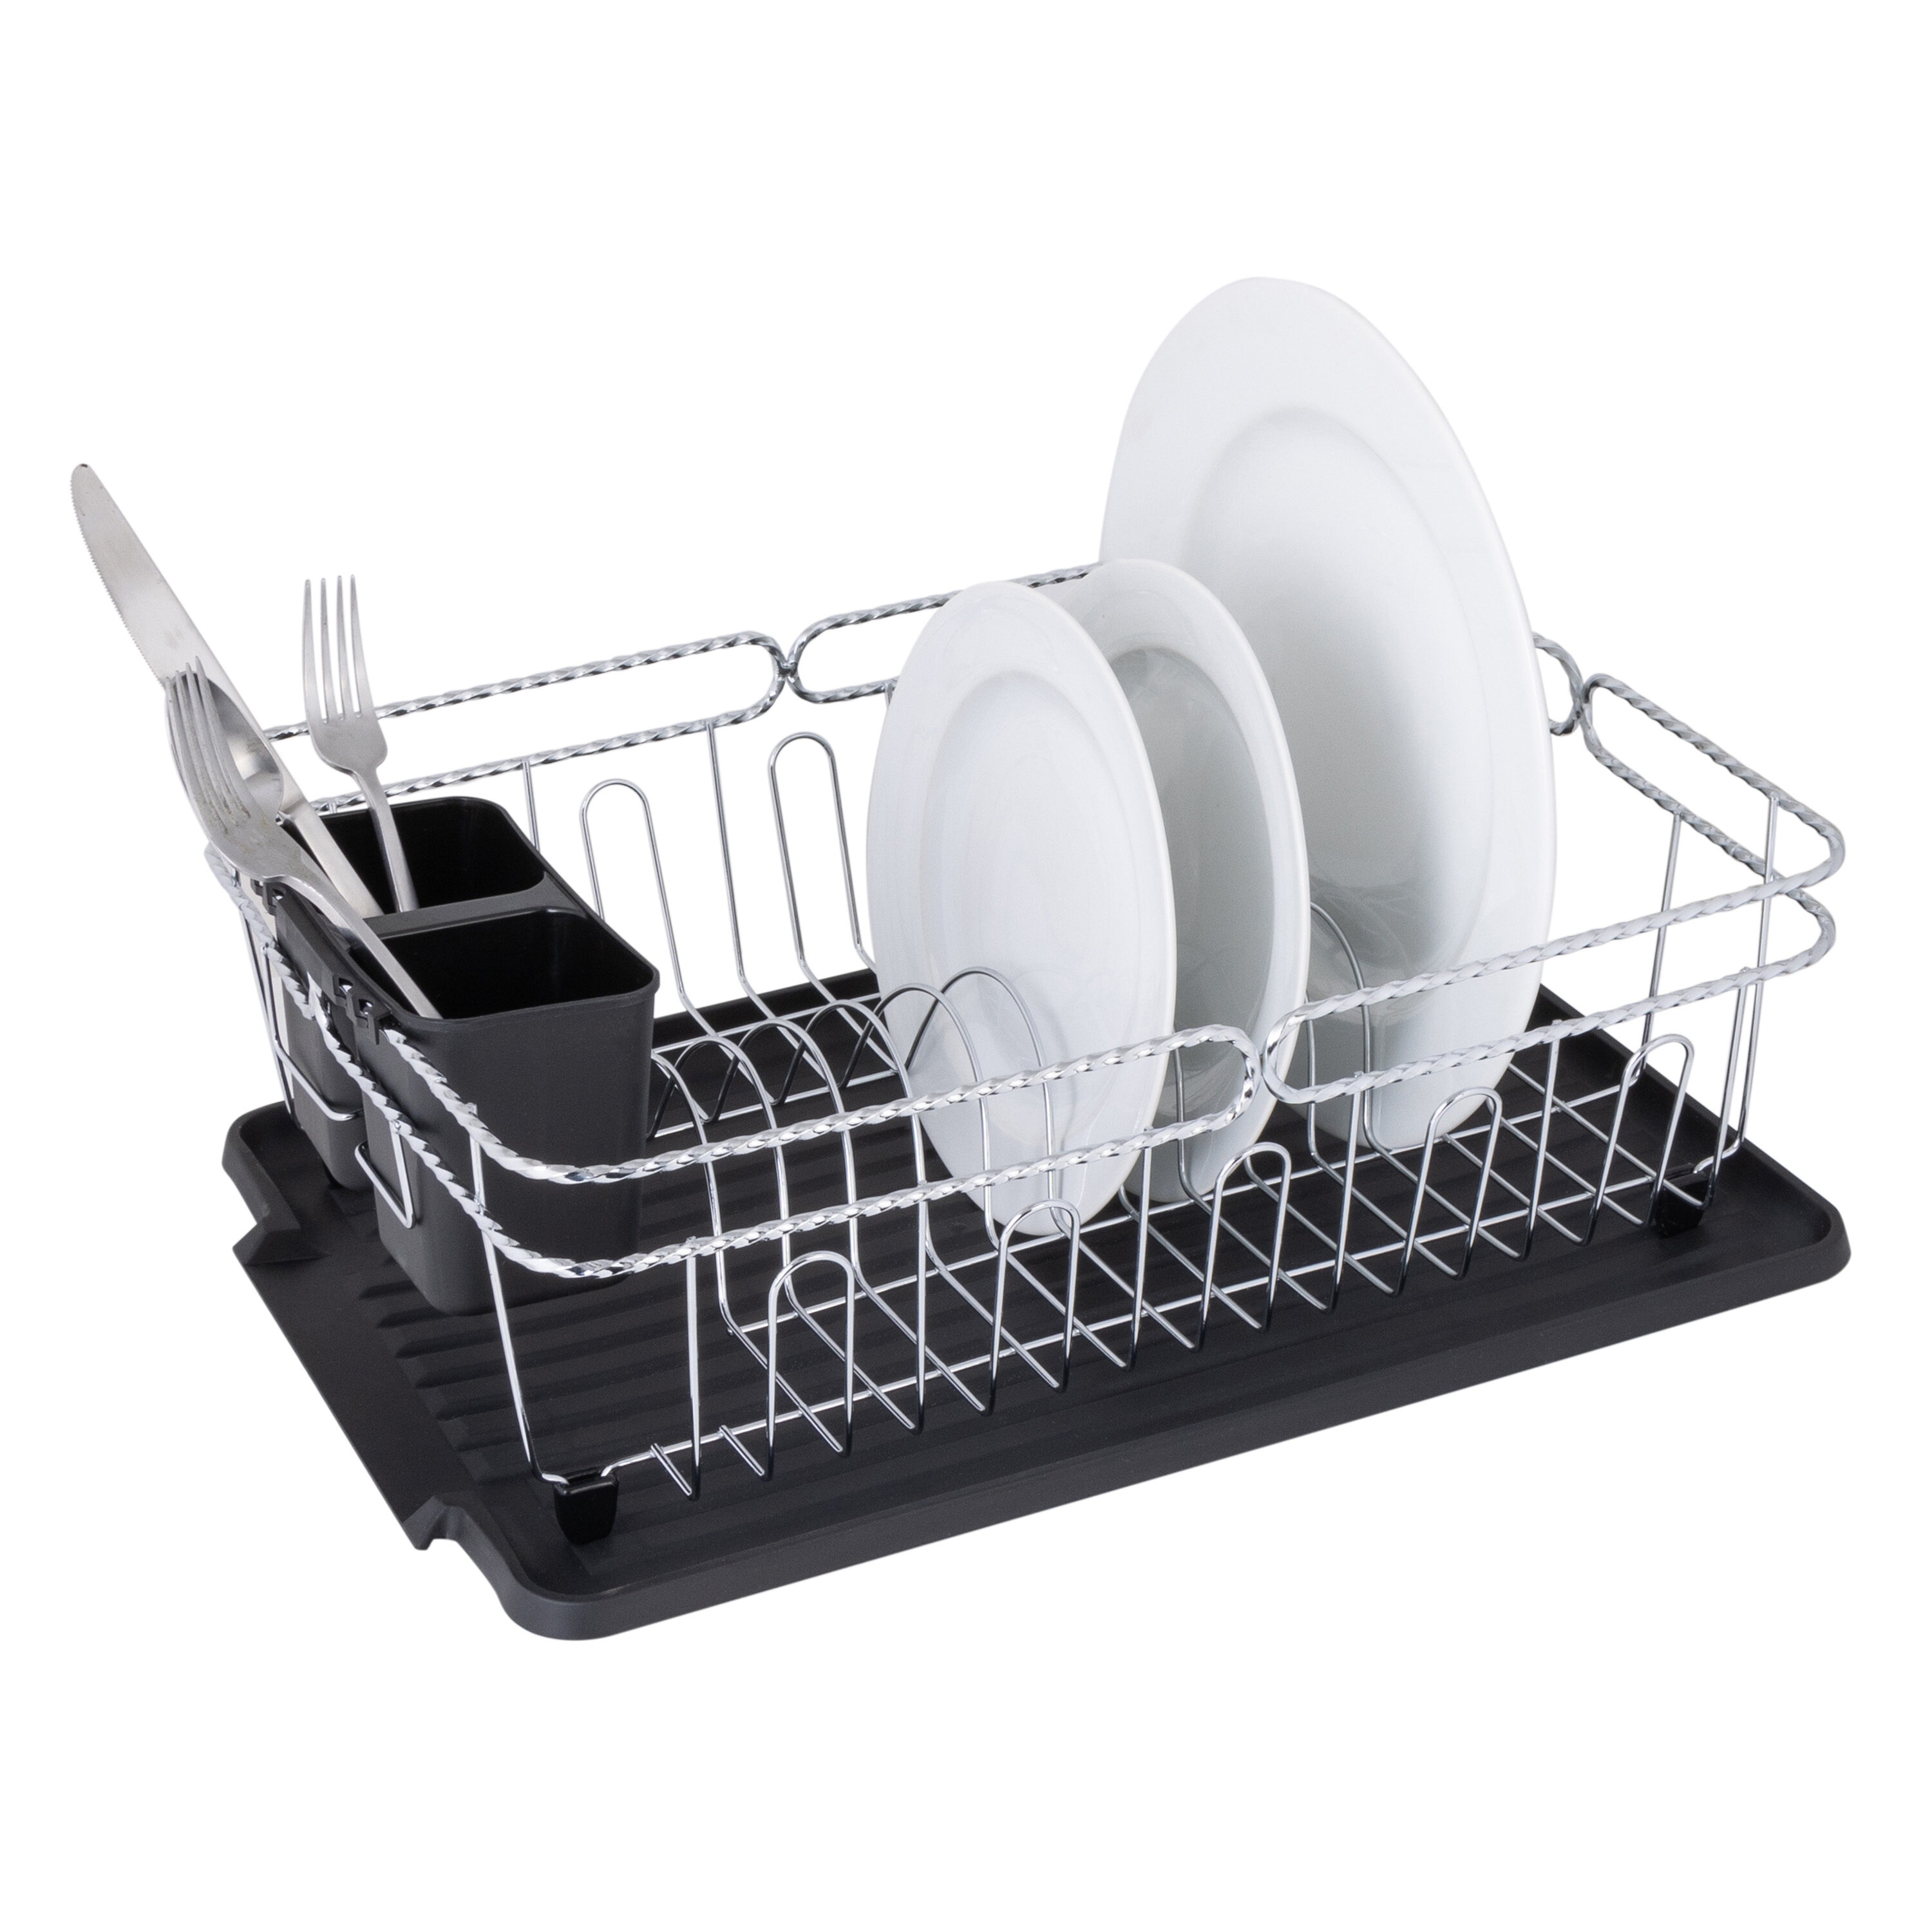 MegaChef 12-in W x 16-in L x 4-in H Metal Dish Rack in the Dish